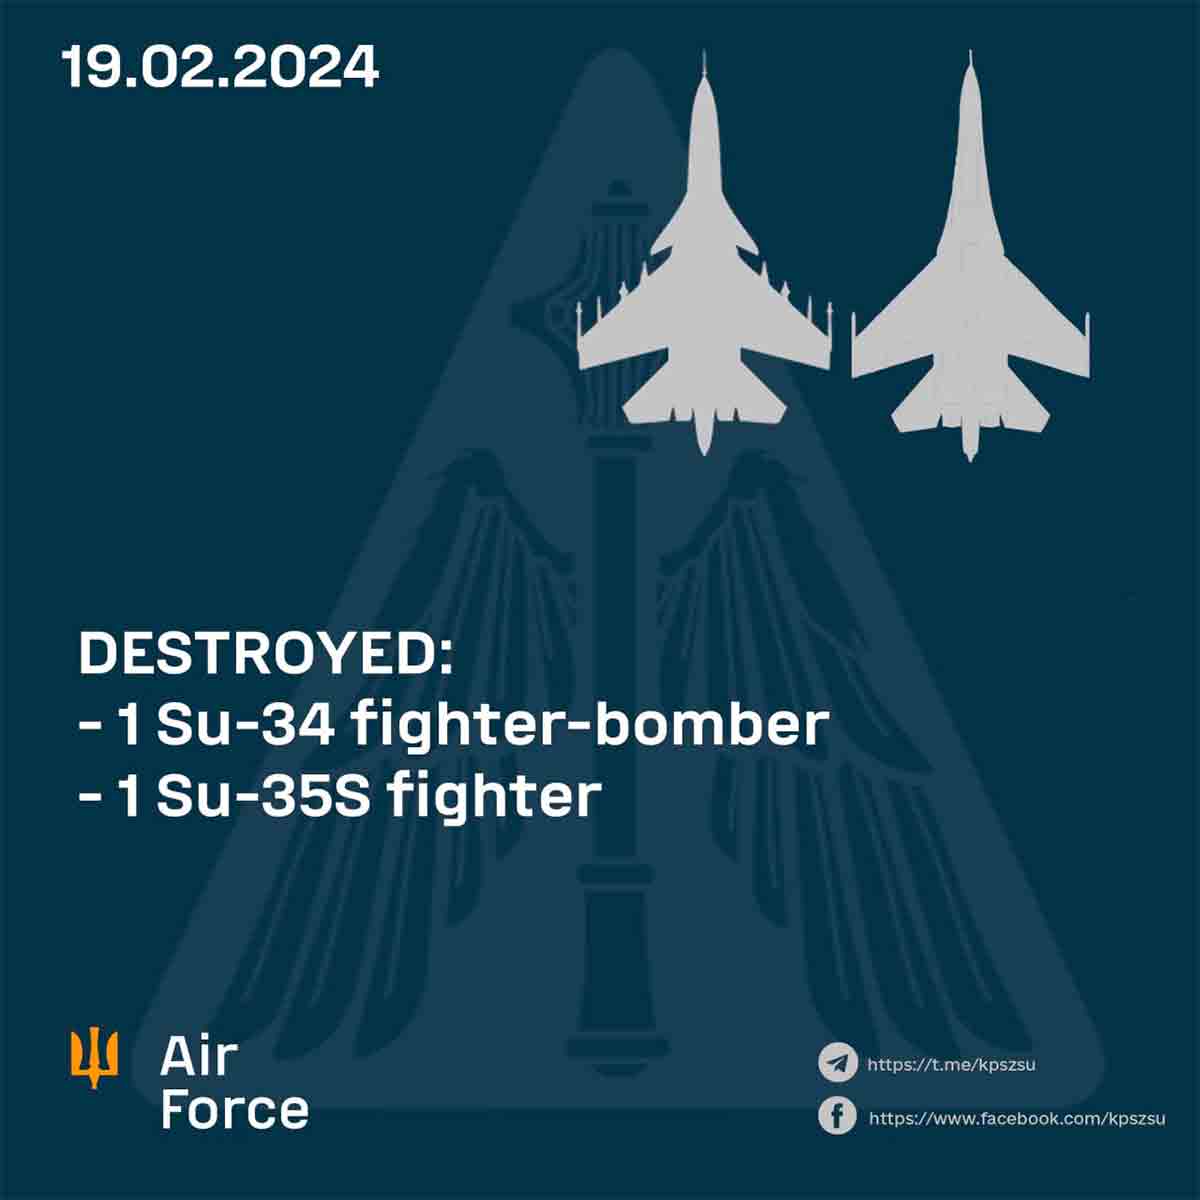 Den ukrainska flygvapnet meddelar nedskjutningen av ytterligare två ryska stridsflygplan, vilket totalt innebär 6 flygplan på tre dagar